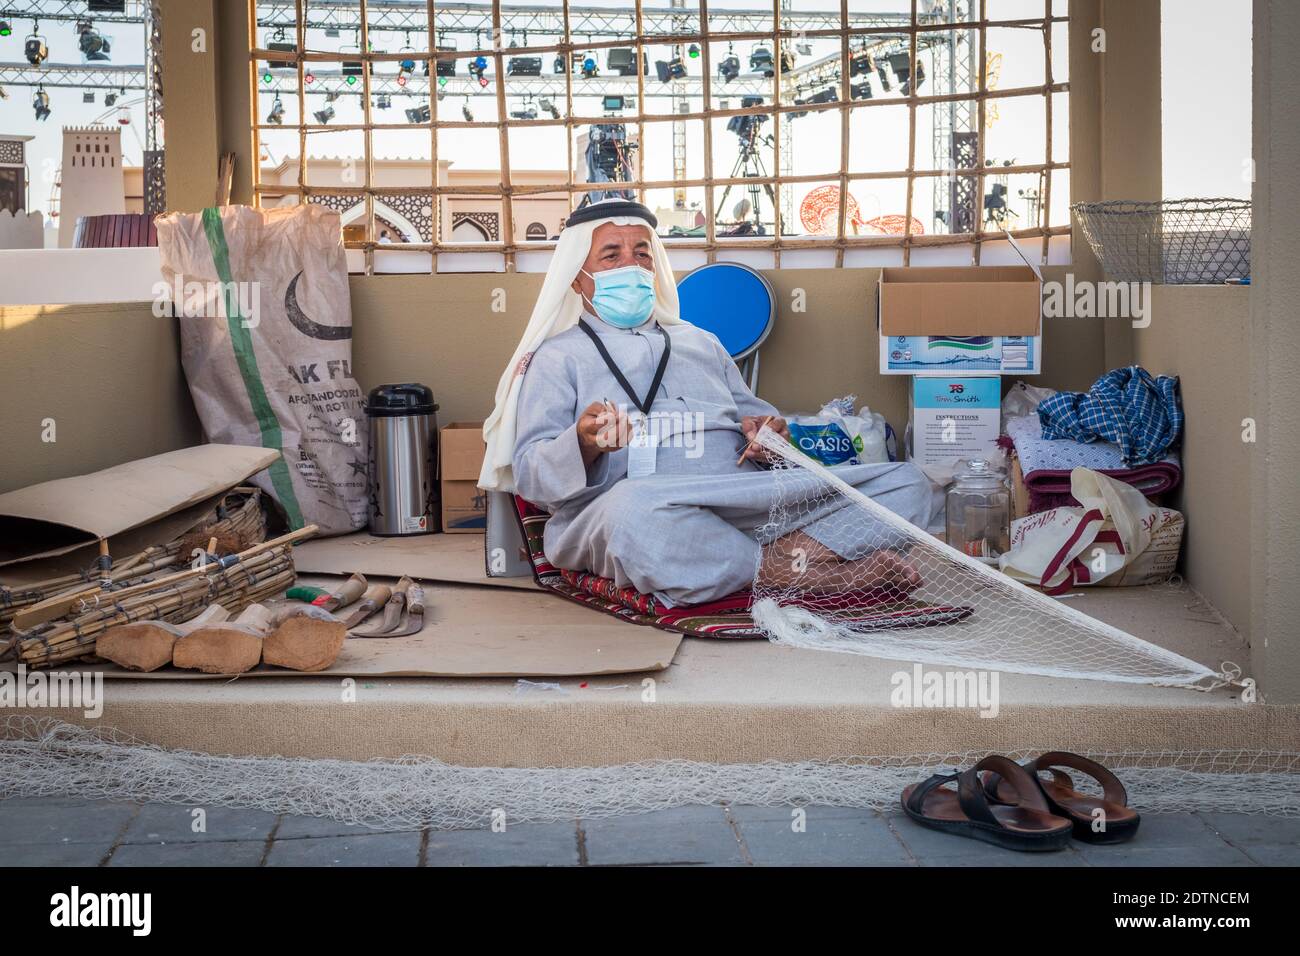 Arabischer Fischer, Reparatur von hausgemachten Fischernetz und Holzyacht, trägt Gesichtsmaske und sitzt auf dem Boden der traditionellen Boam Stockfoto